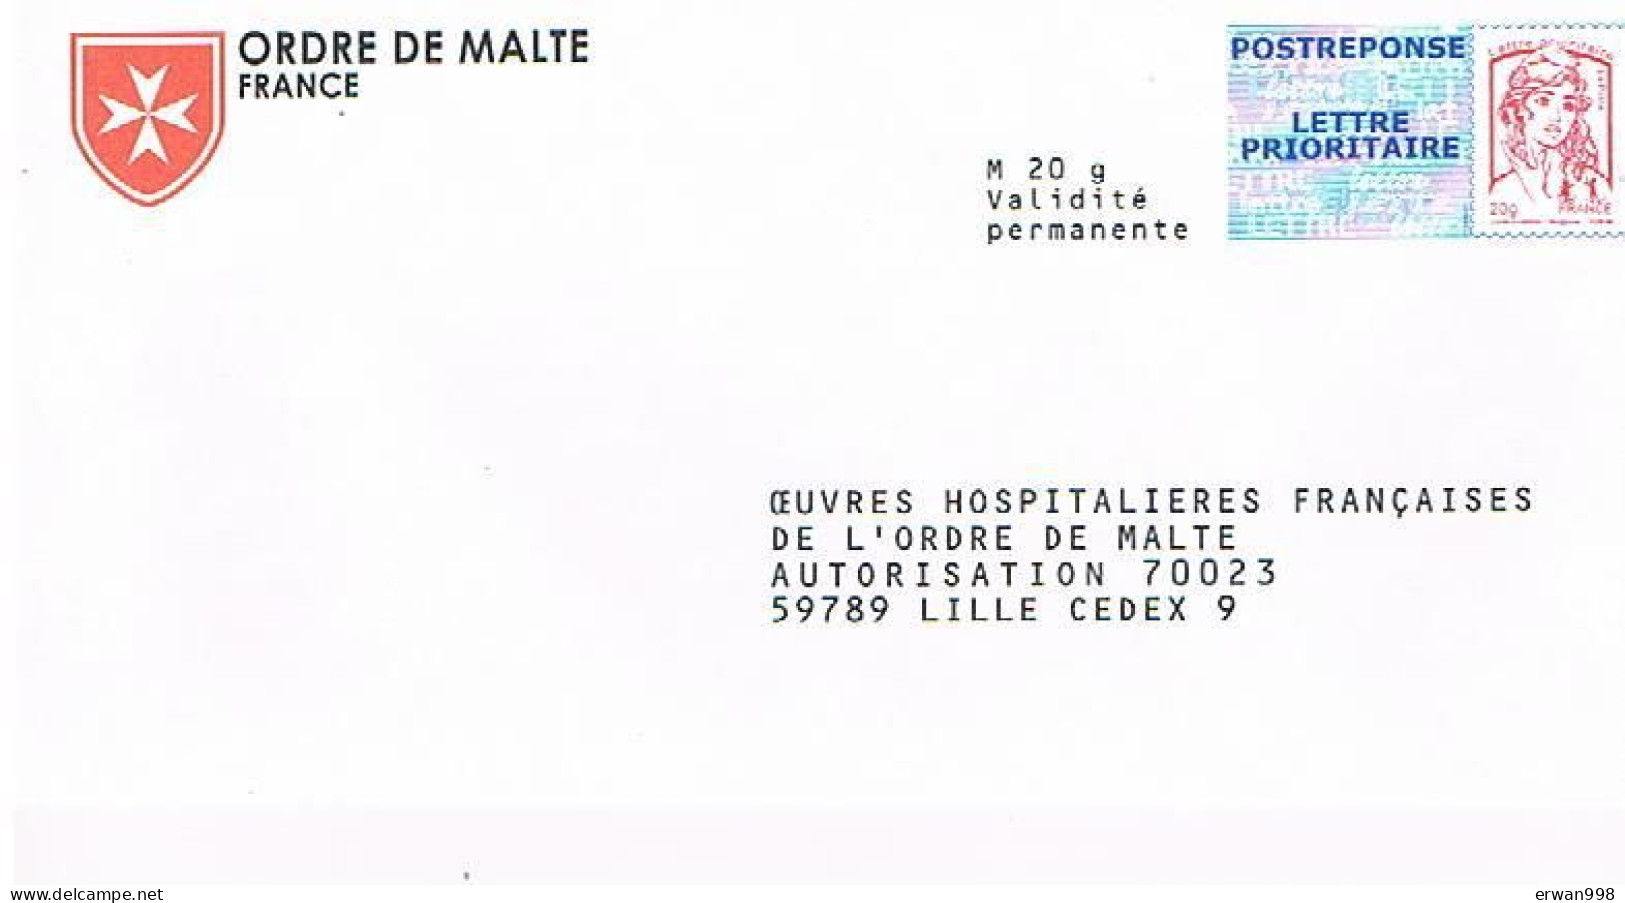 59 LILLE PAP 2 Postréponses Marianne Jeunesse  Ciappa-Kavena 15P164 & 14P281 Oeuvres Ordre De Malte  300 - PAP : Antwoord /Ciappa-Kavena